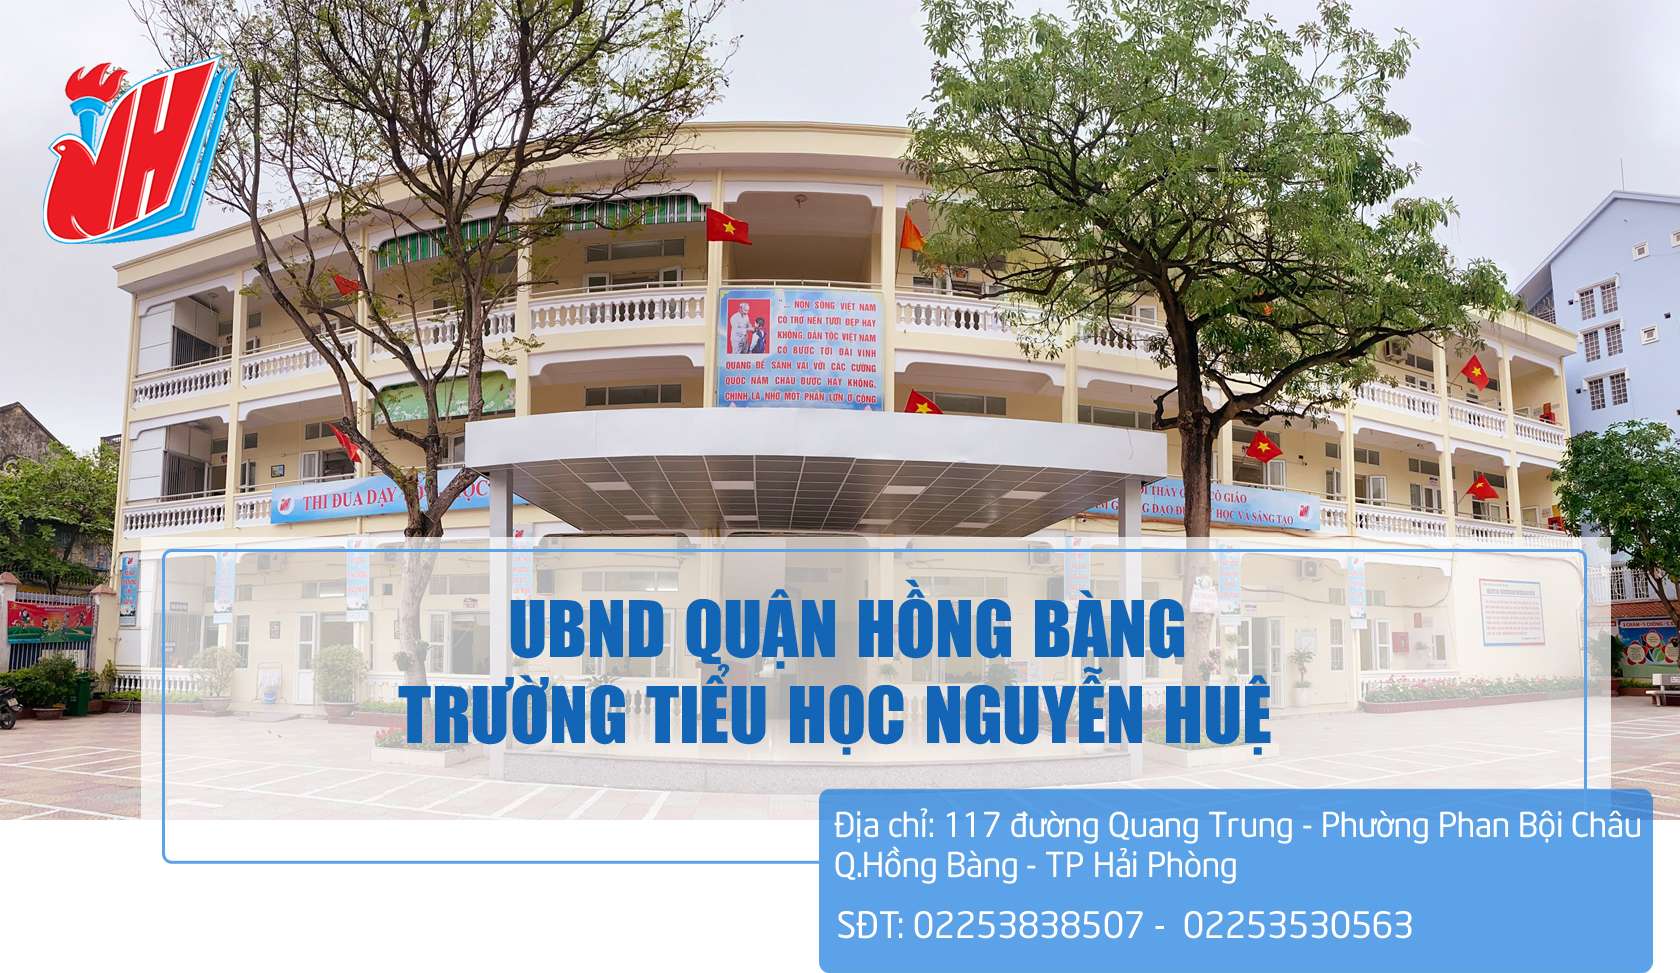 Trường Tiểu học Nguyễn Huệ - Trường học hạnh phúc